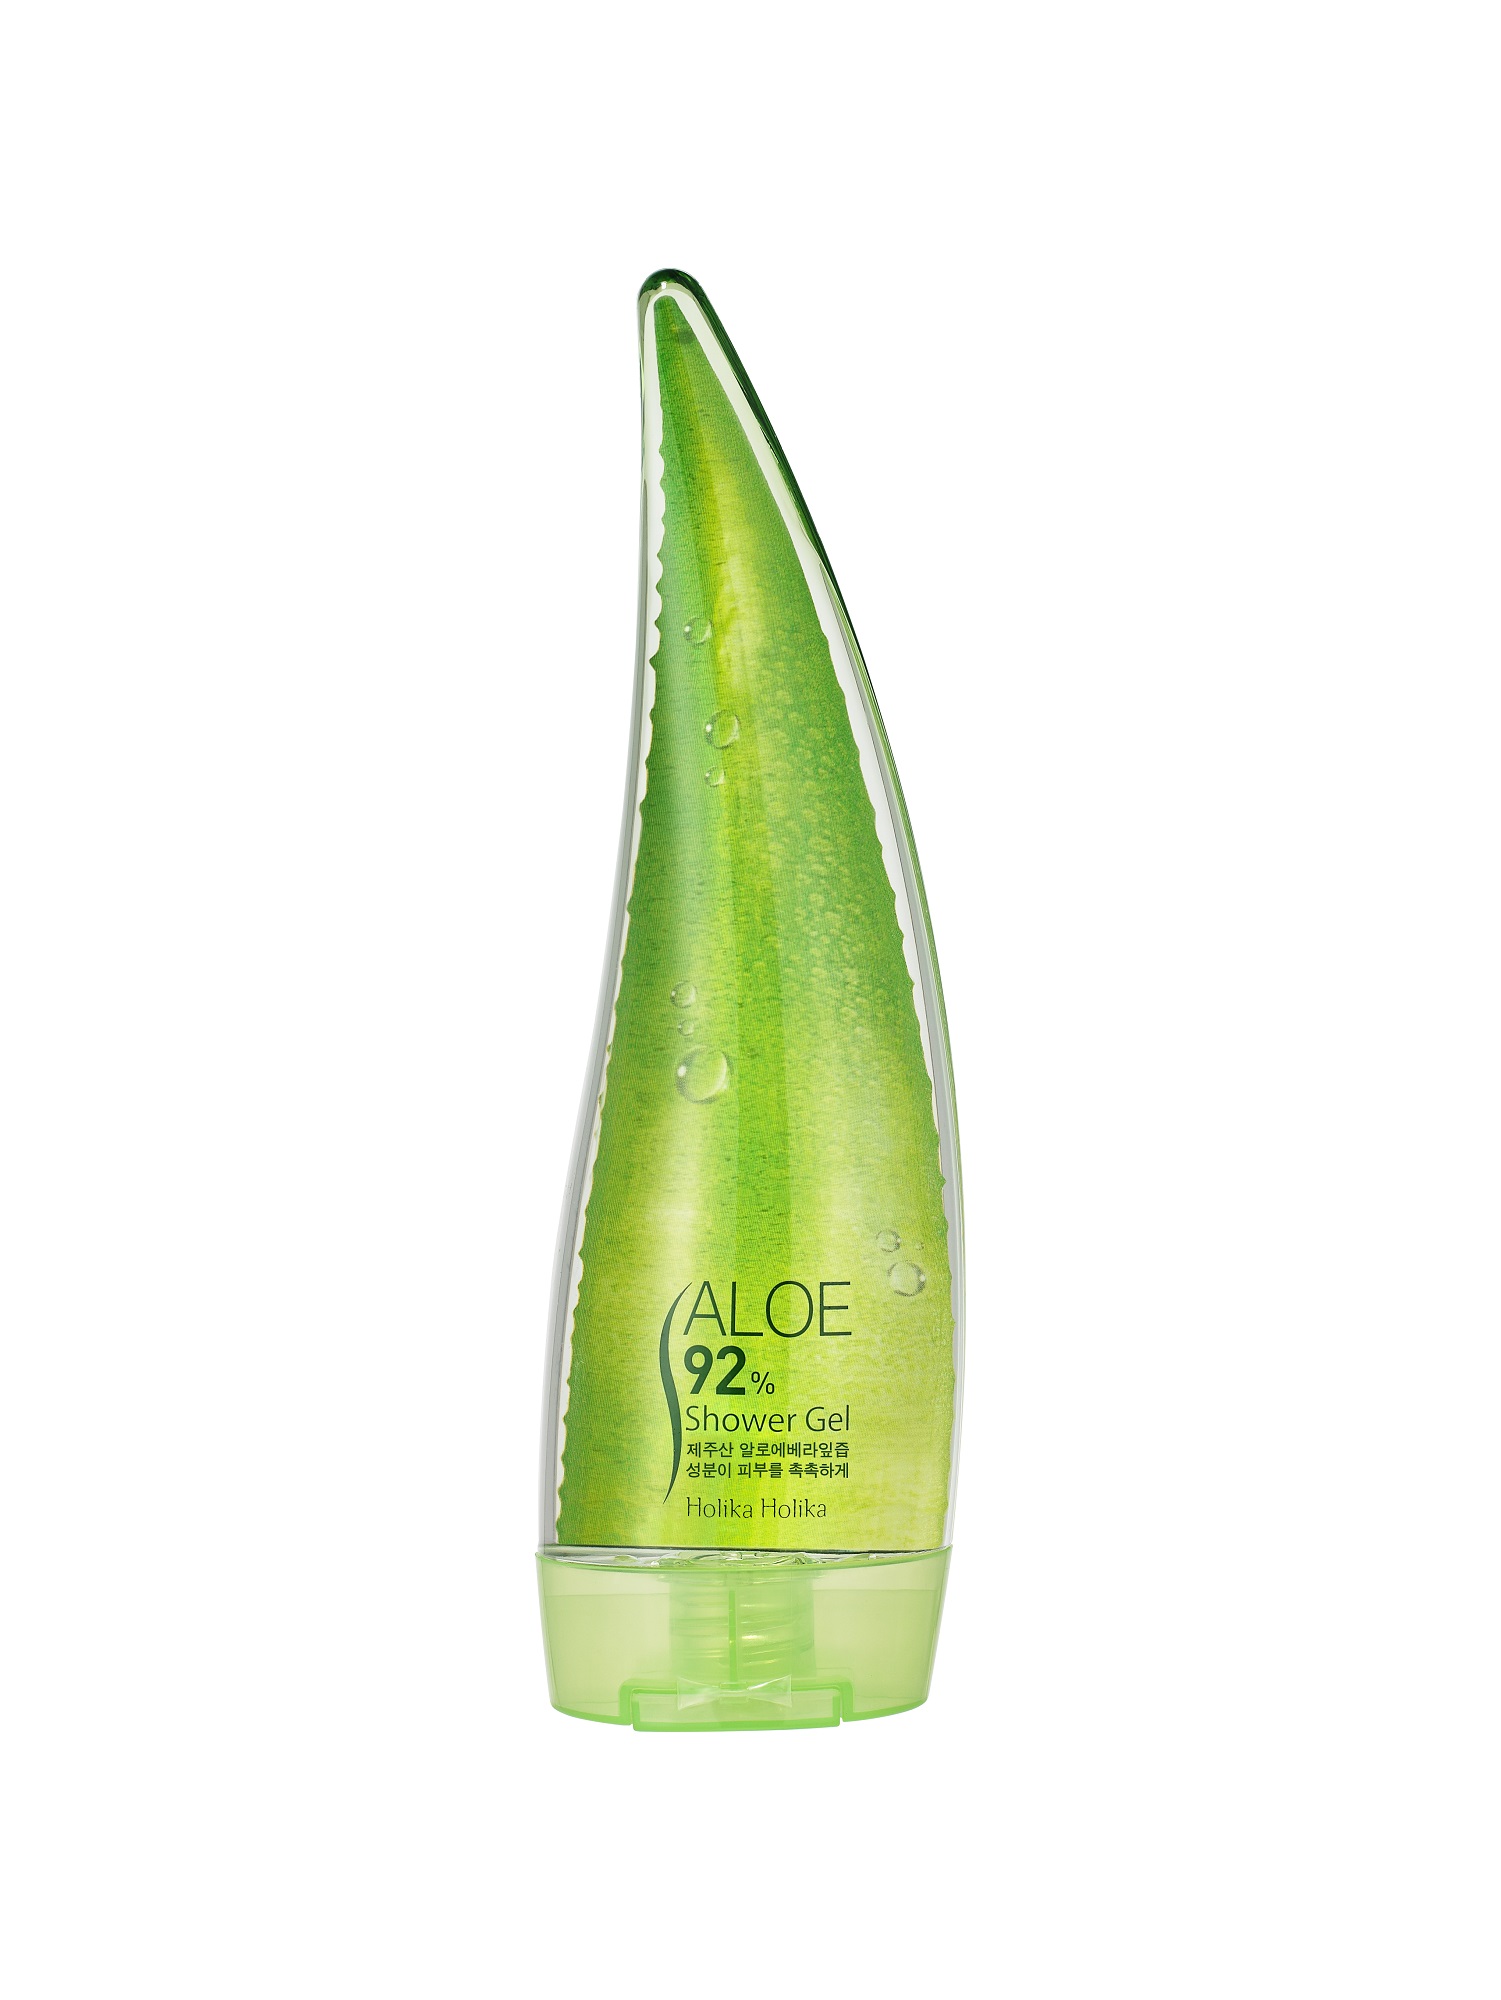 Holika Holika Sprchový gél Aloe 92% (Shower Gel) 250 ml